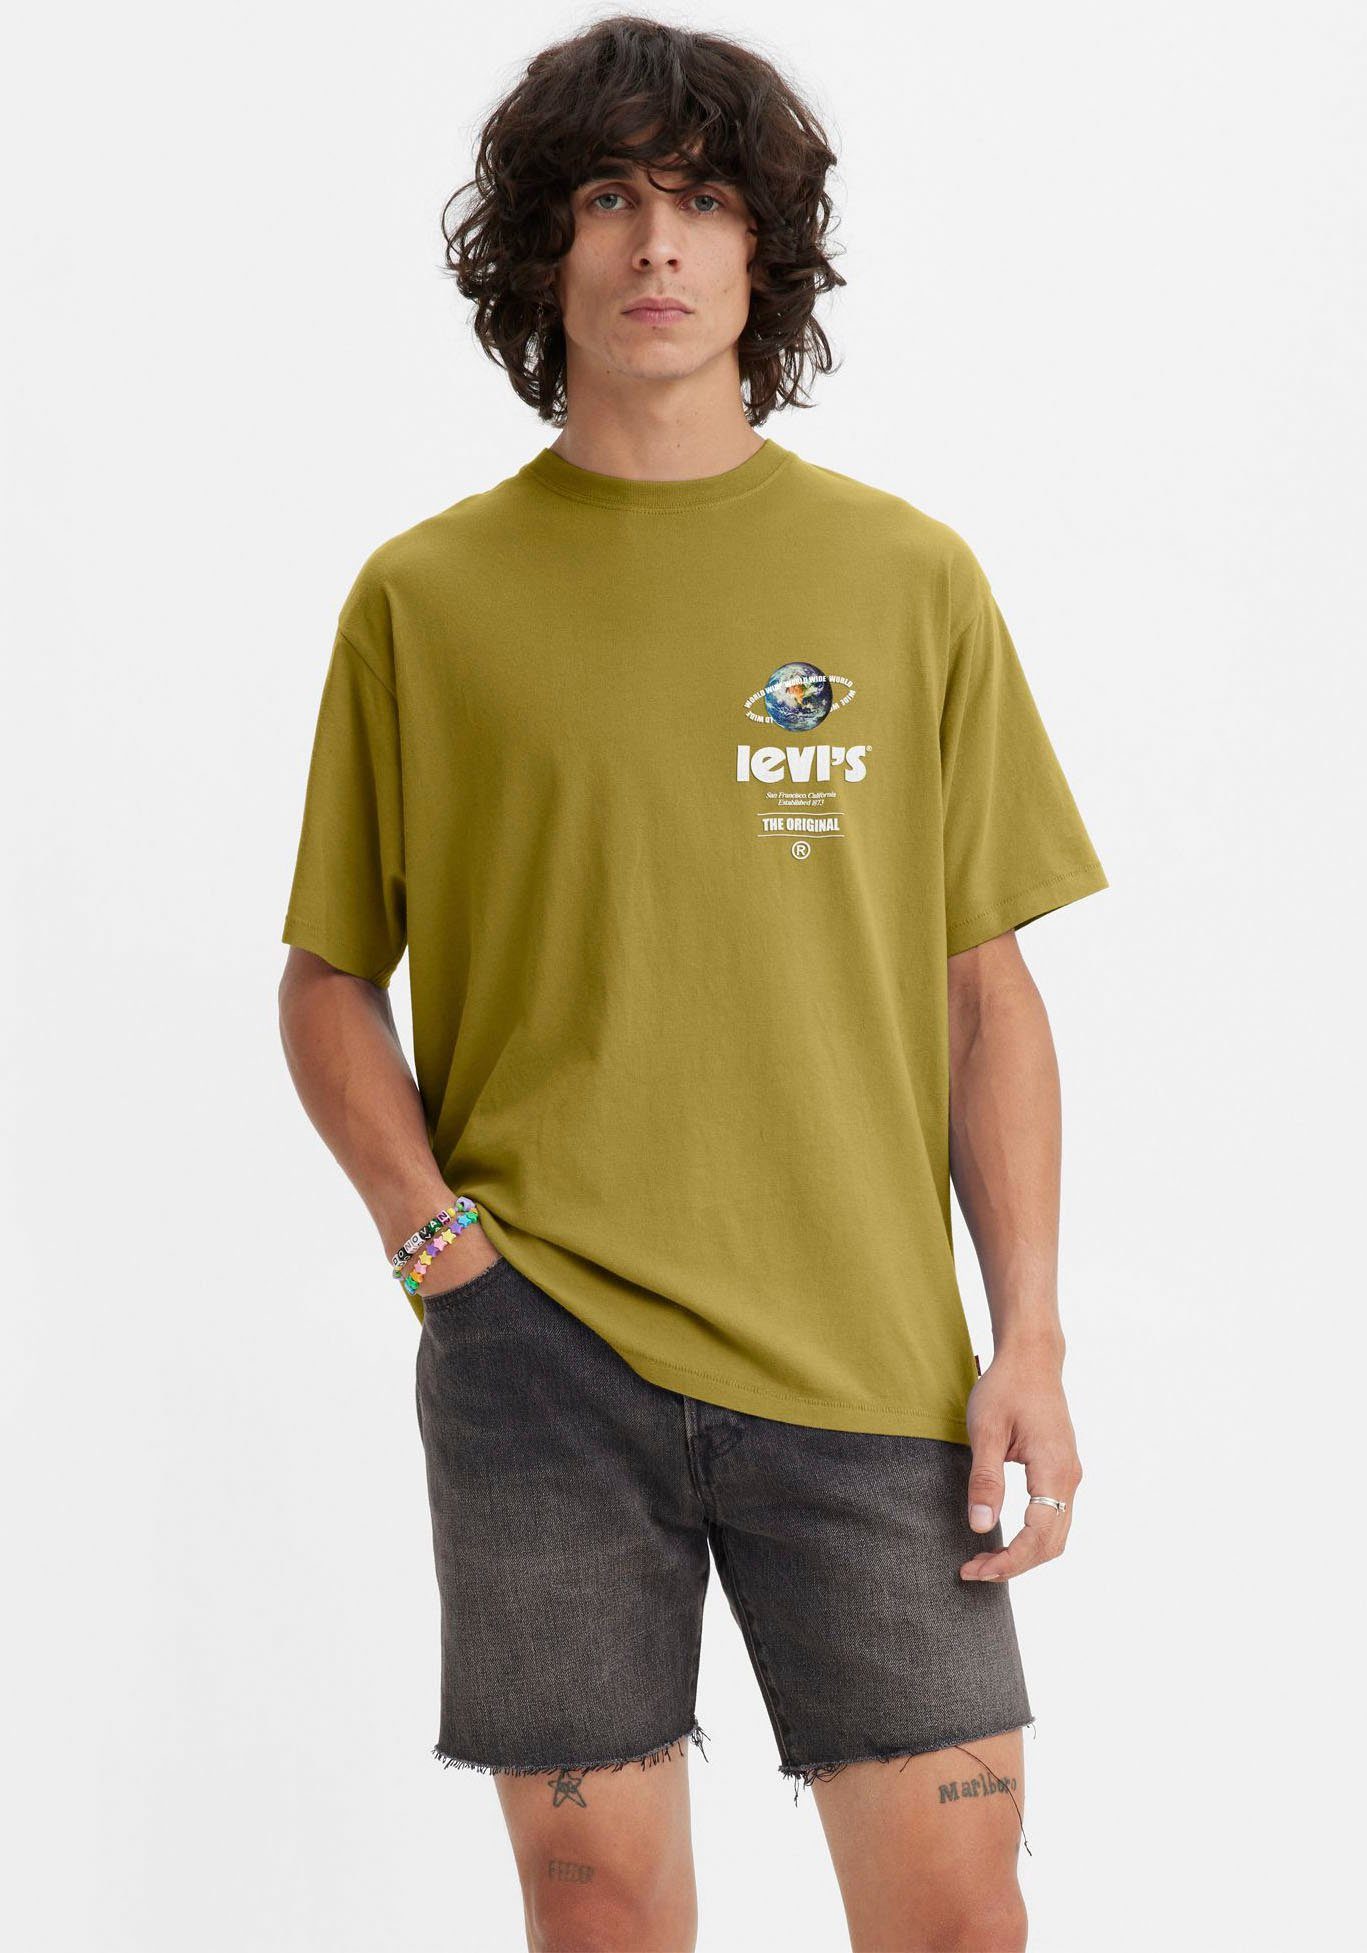 Levi's® T-Shirt KA VINTAGE golden TEE WIDE FIT GRAPHIC olive WORLD